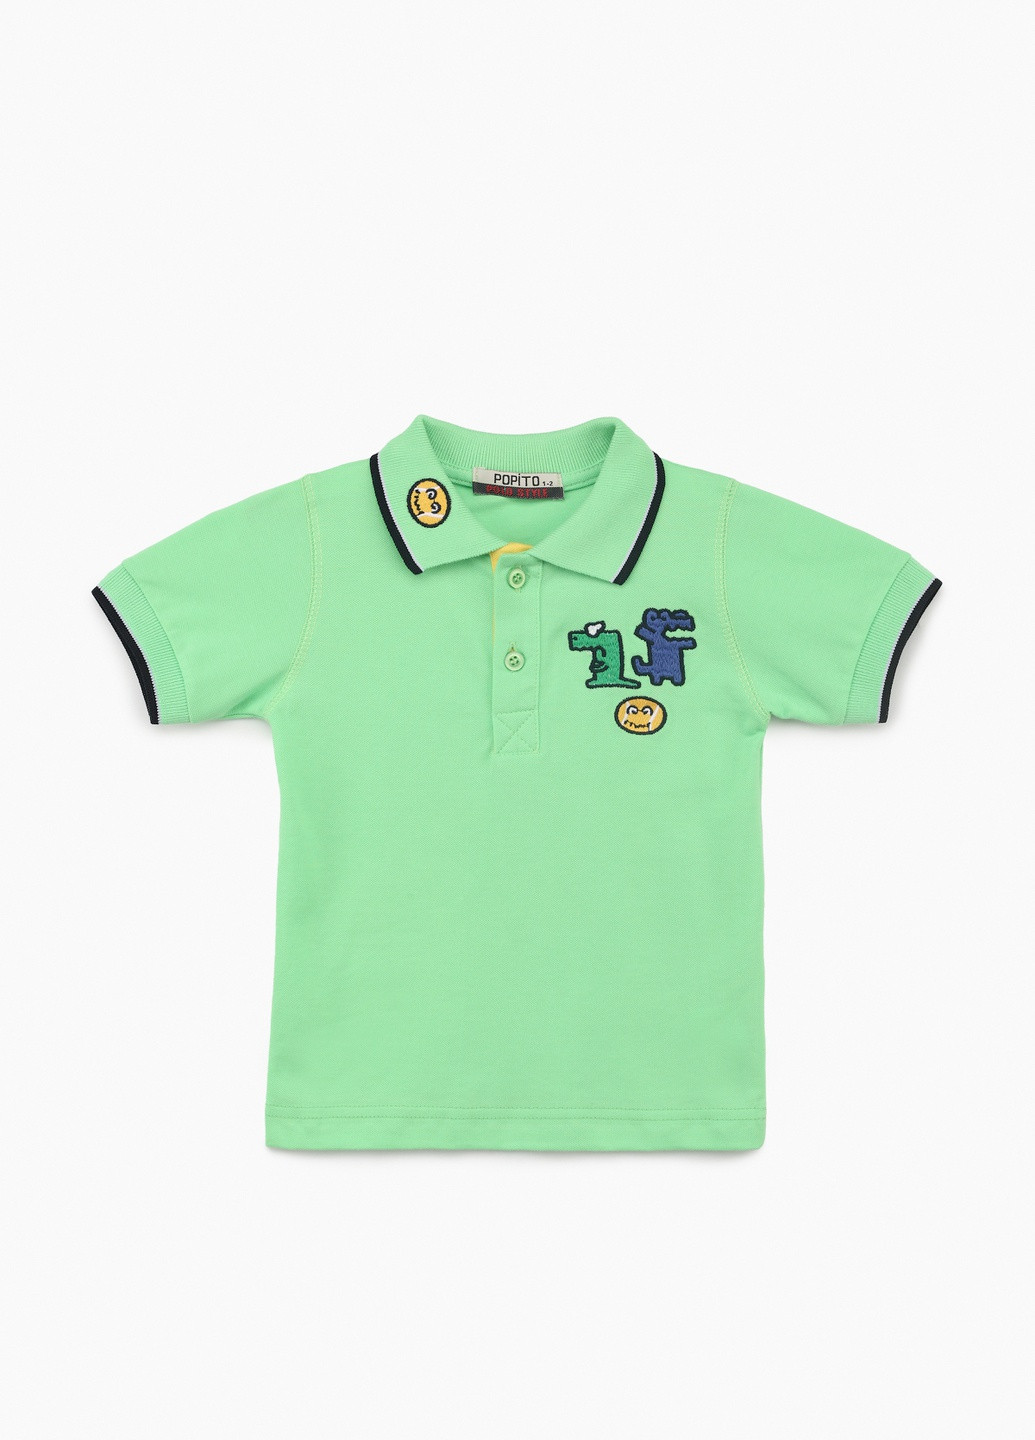 Салатовая детская футболка-поло для мальчика Popito однотонная